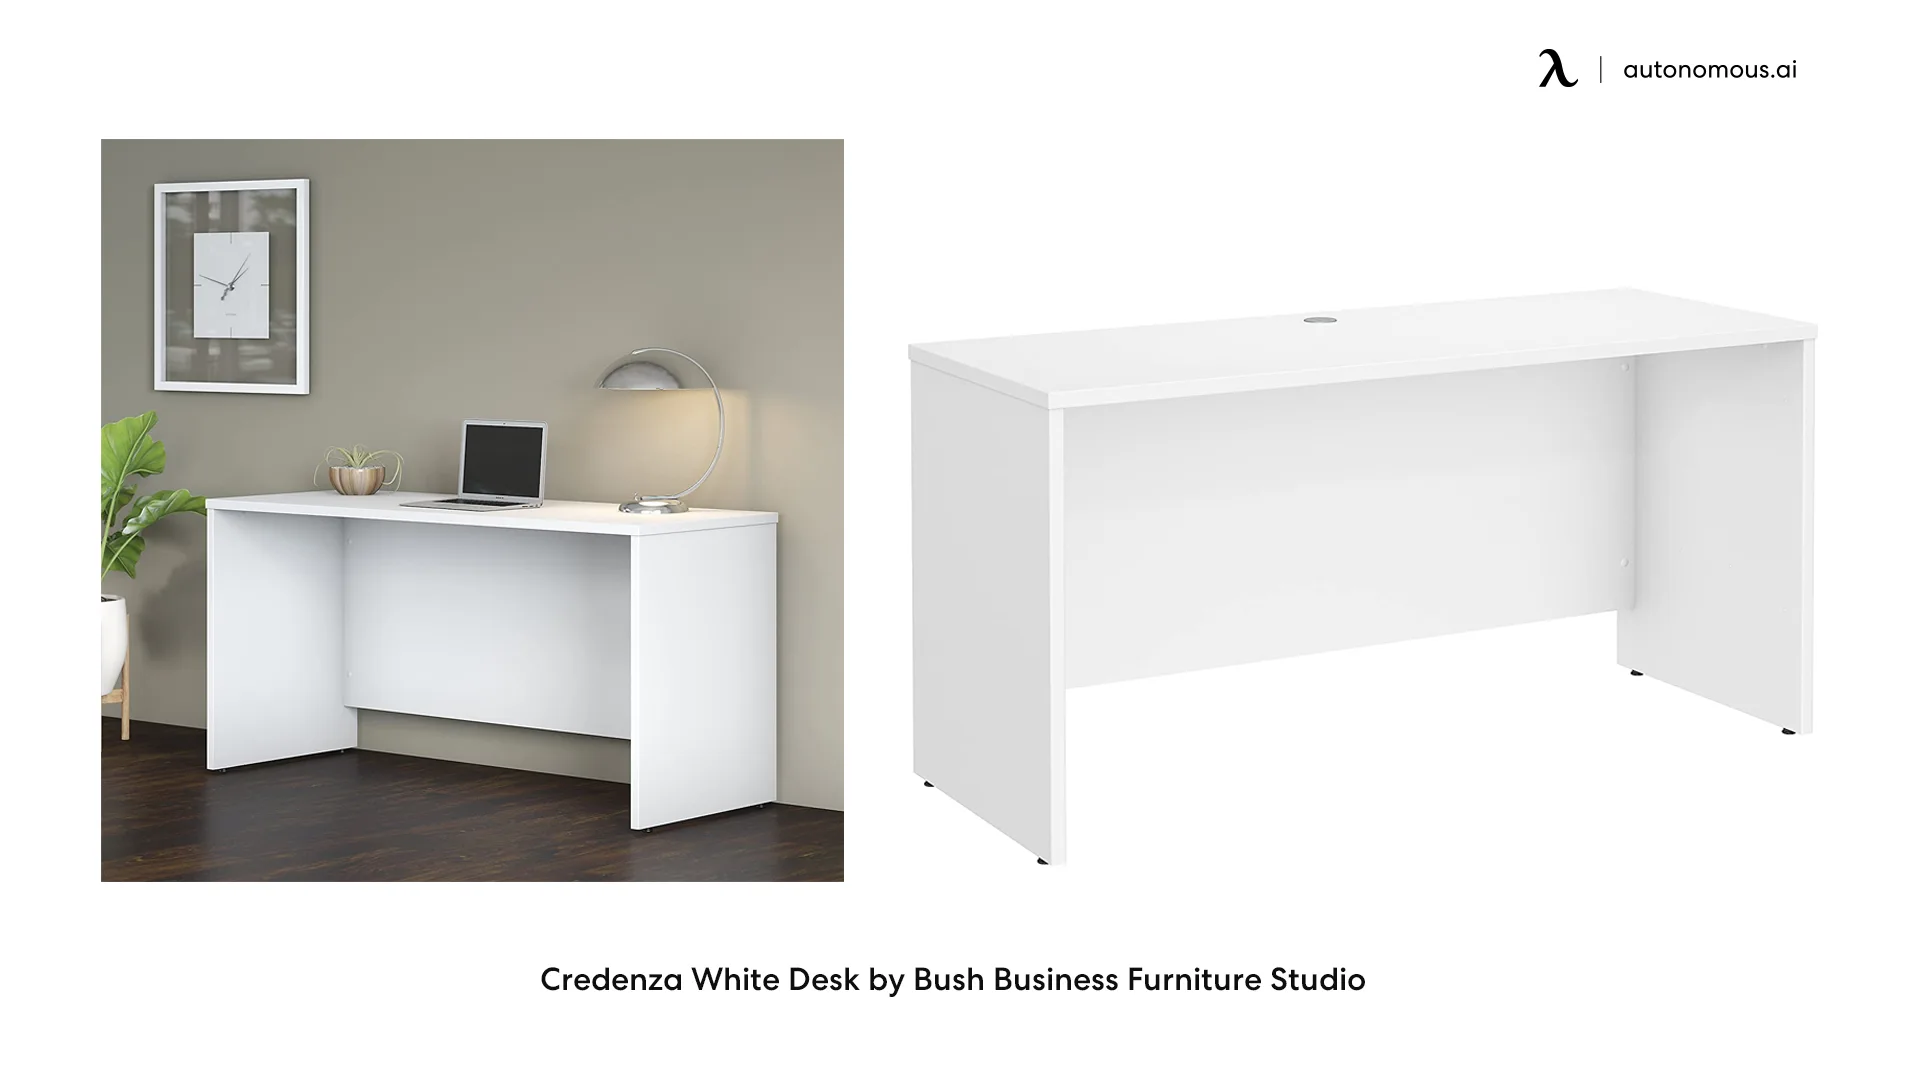 Credenza White Desk by Bush Business Furniture Studio